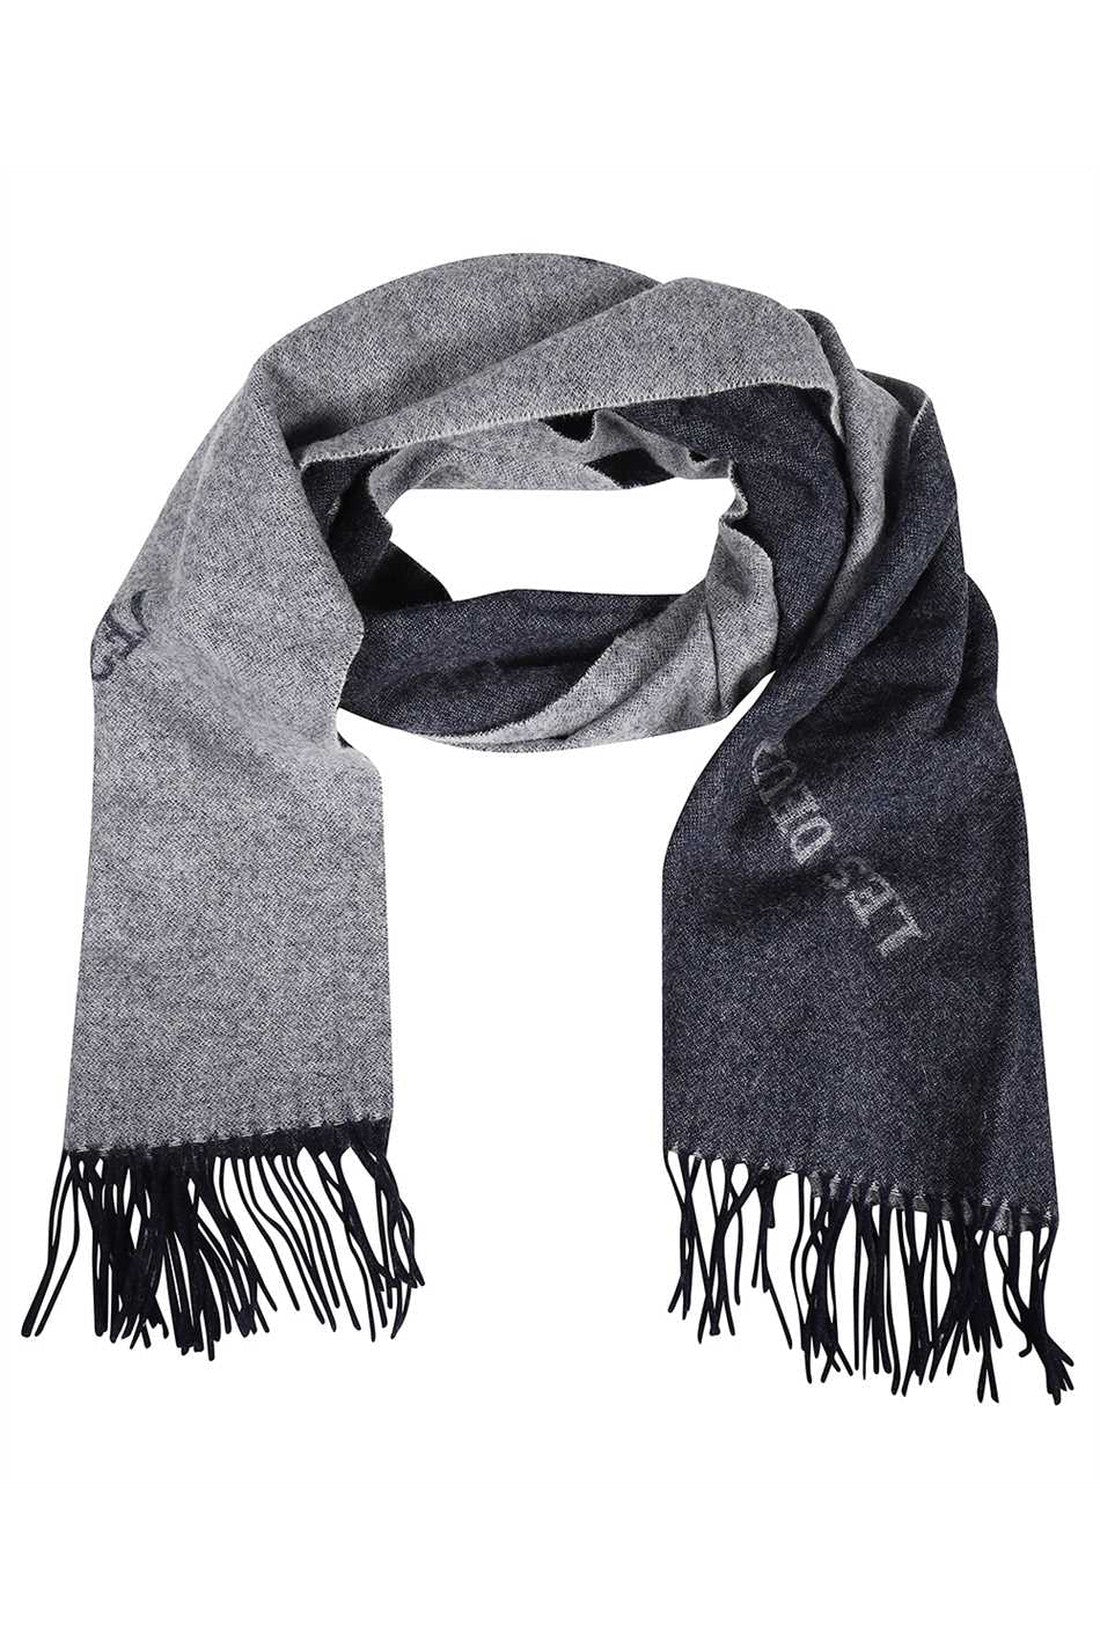 Wool scarf with fringes-Les Deux-OUTLET-SALE-TU-ARCHIVIST